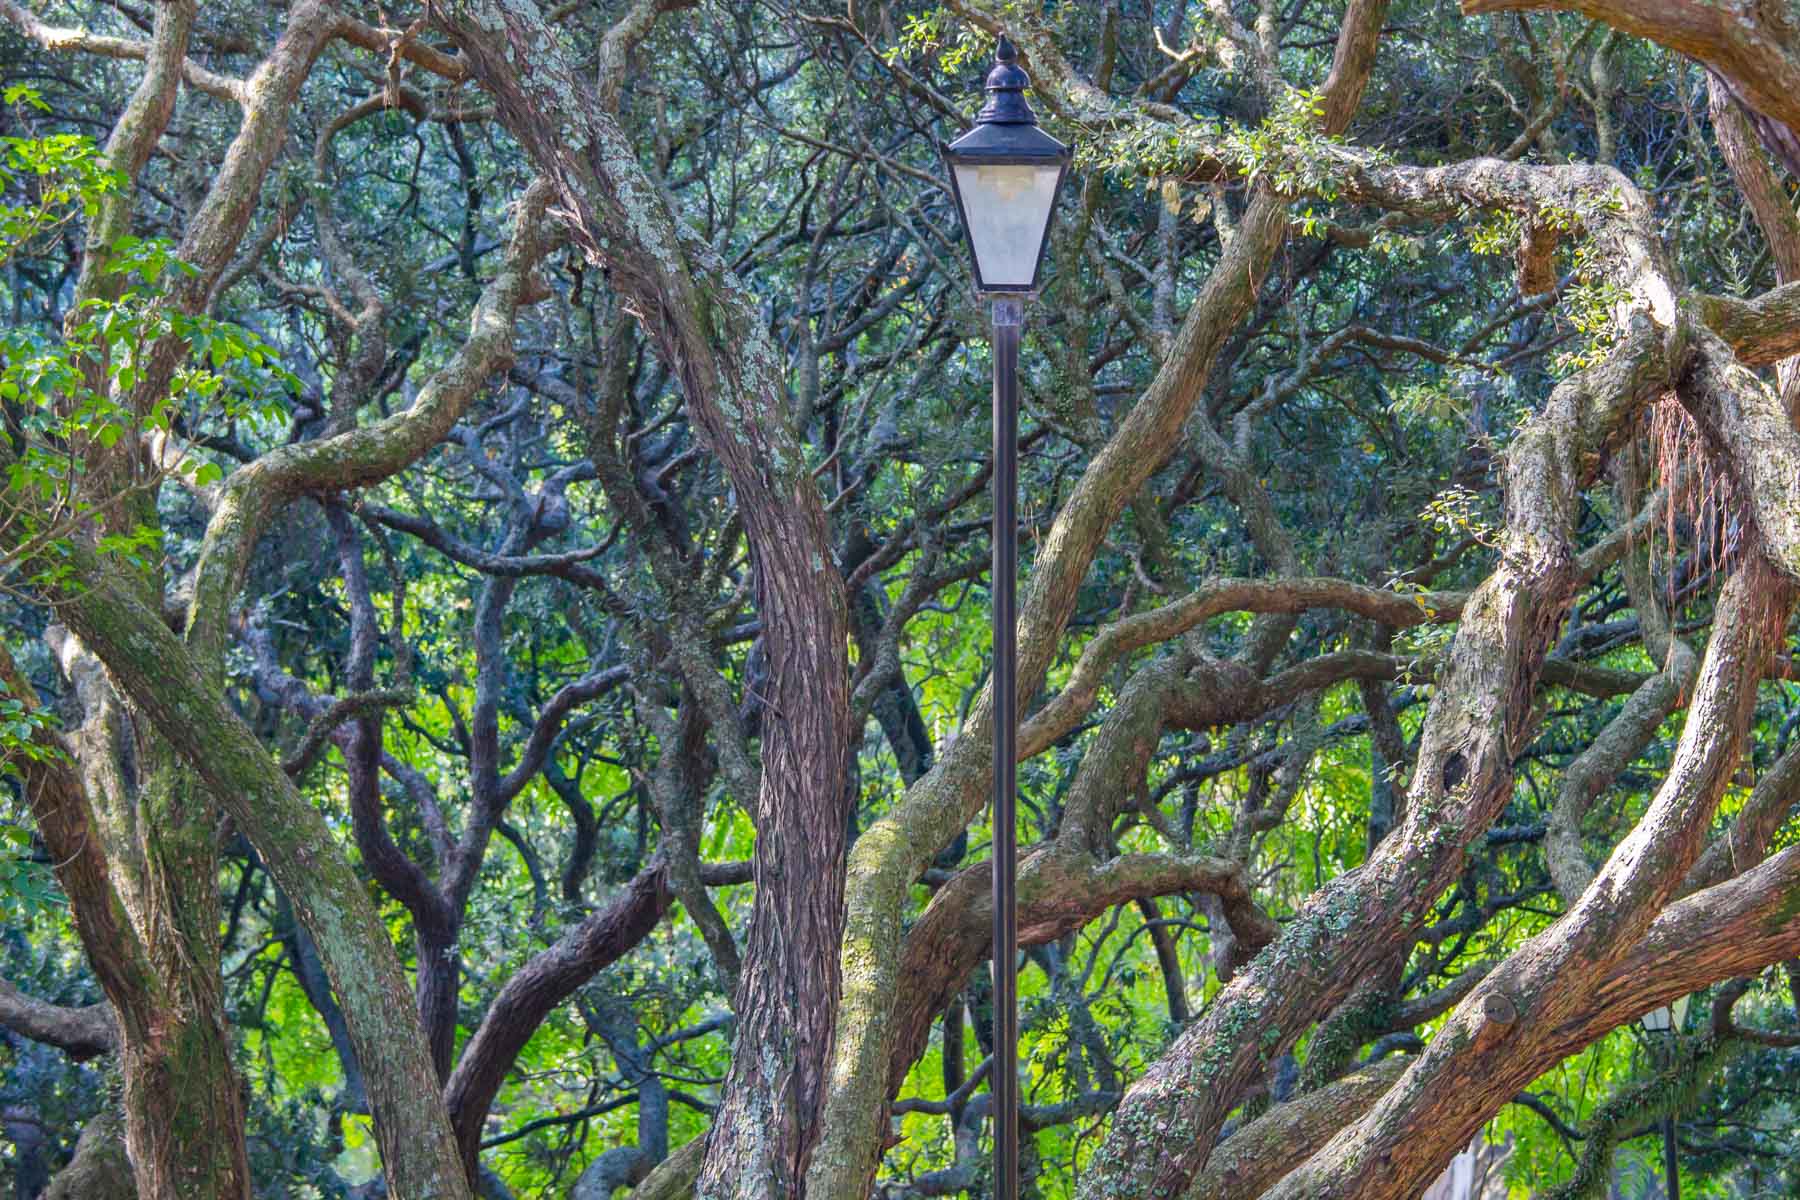 Un lampadaire noir de style antique se dresse au milieu d’arbres verdoyants et aux troncs biscornus.